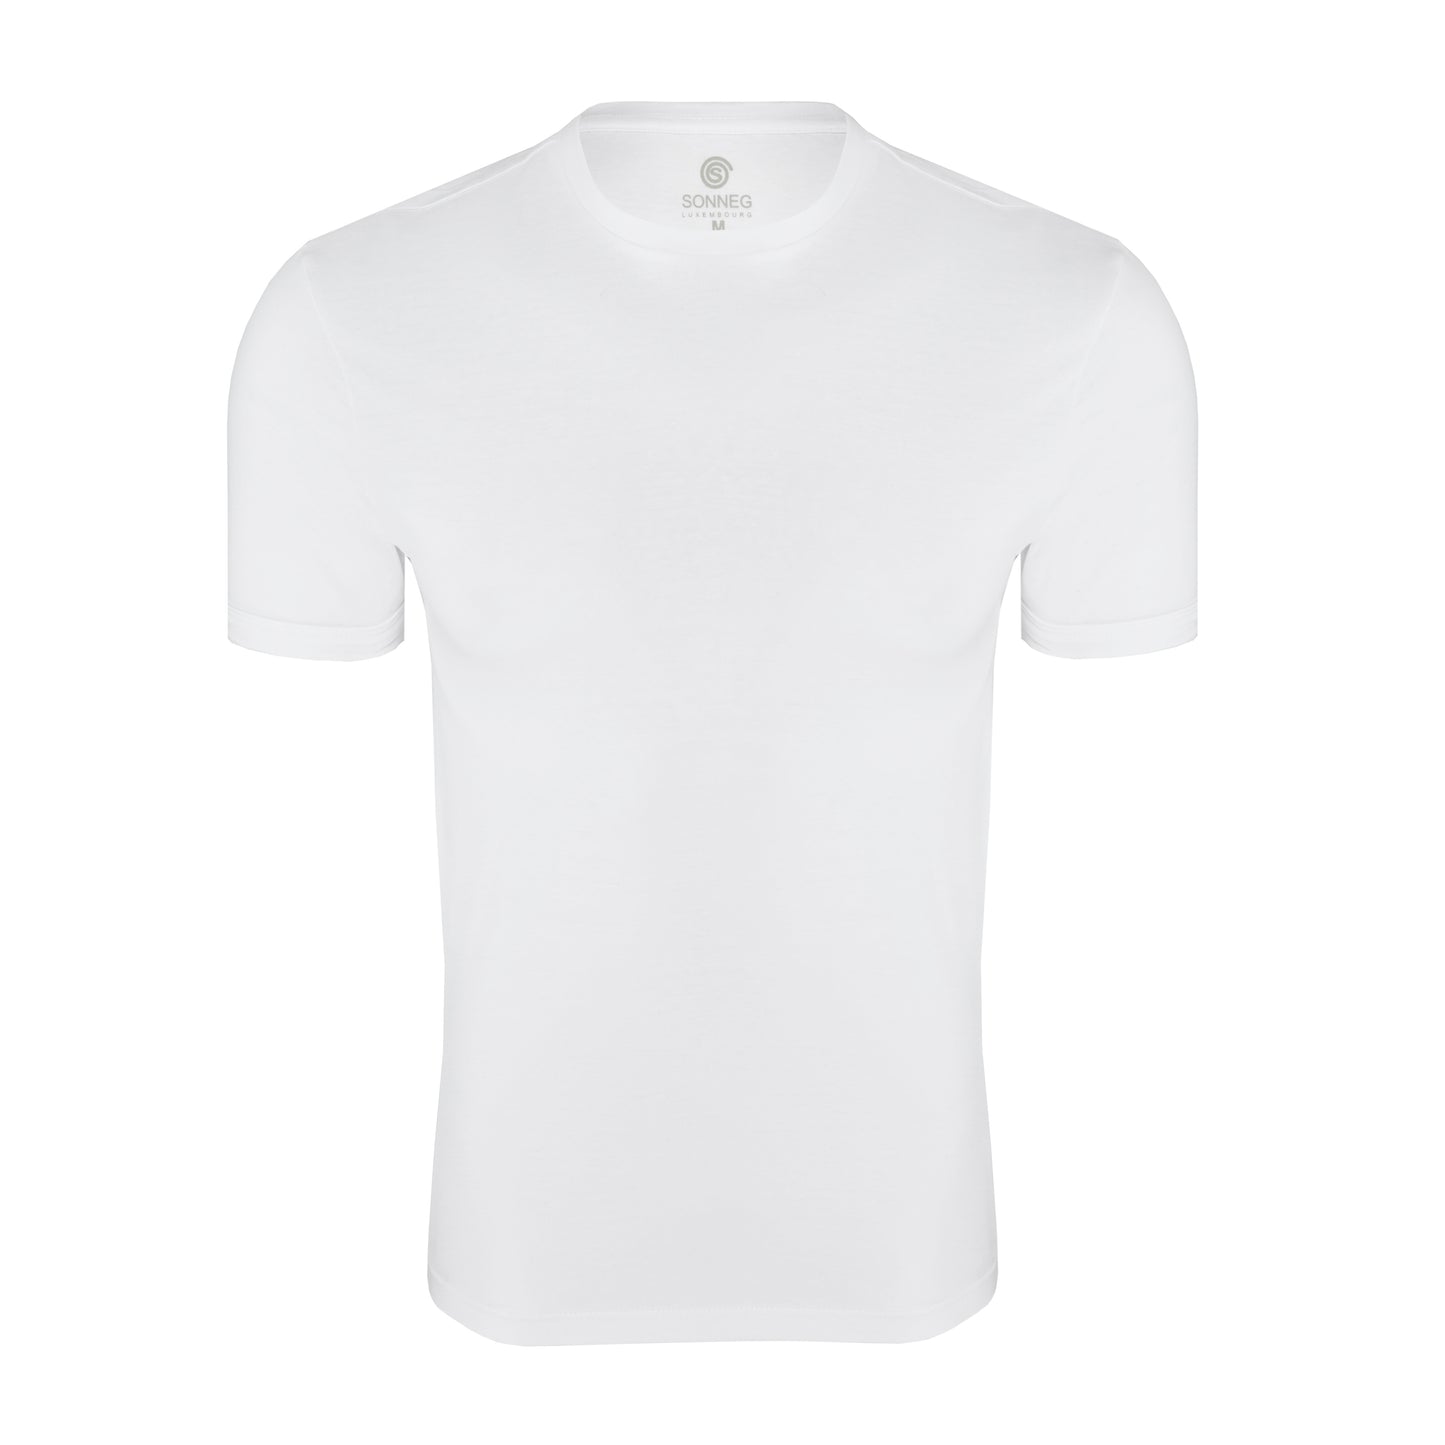 Col rond serré, blanc, coupe slim, T-shirt – pack de 2 ou 4 t-shirts